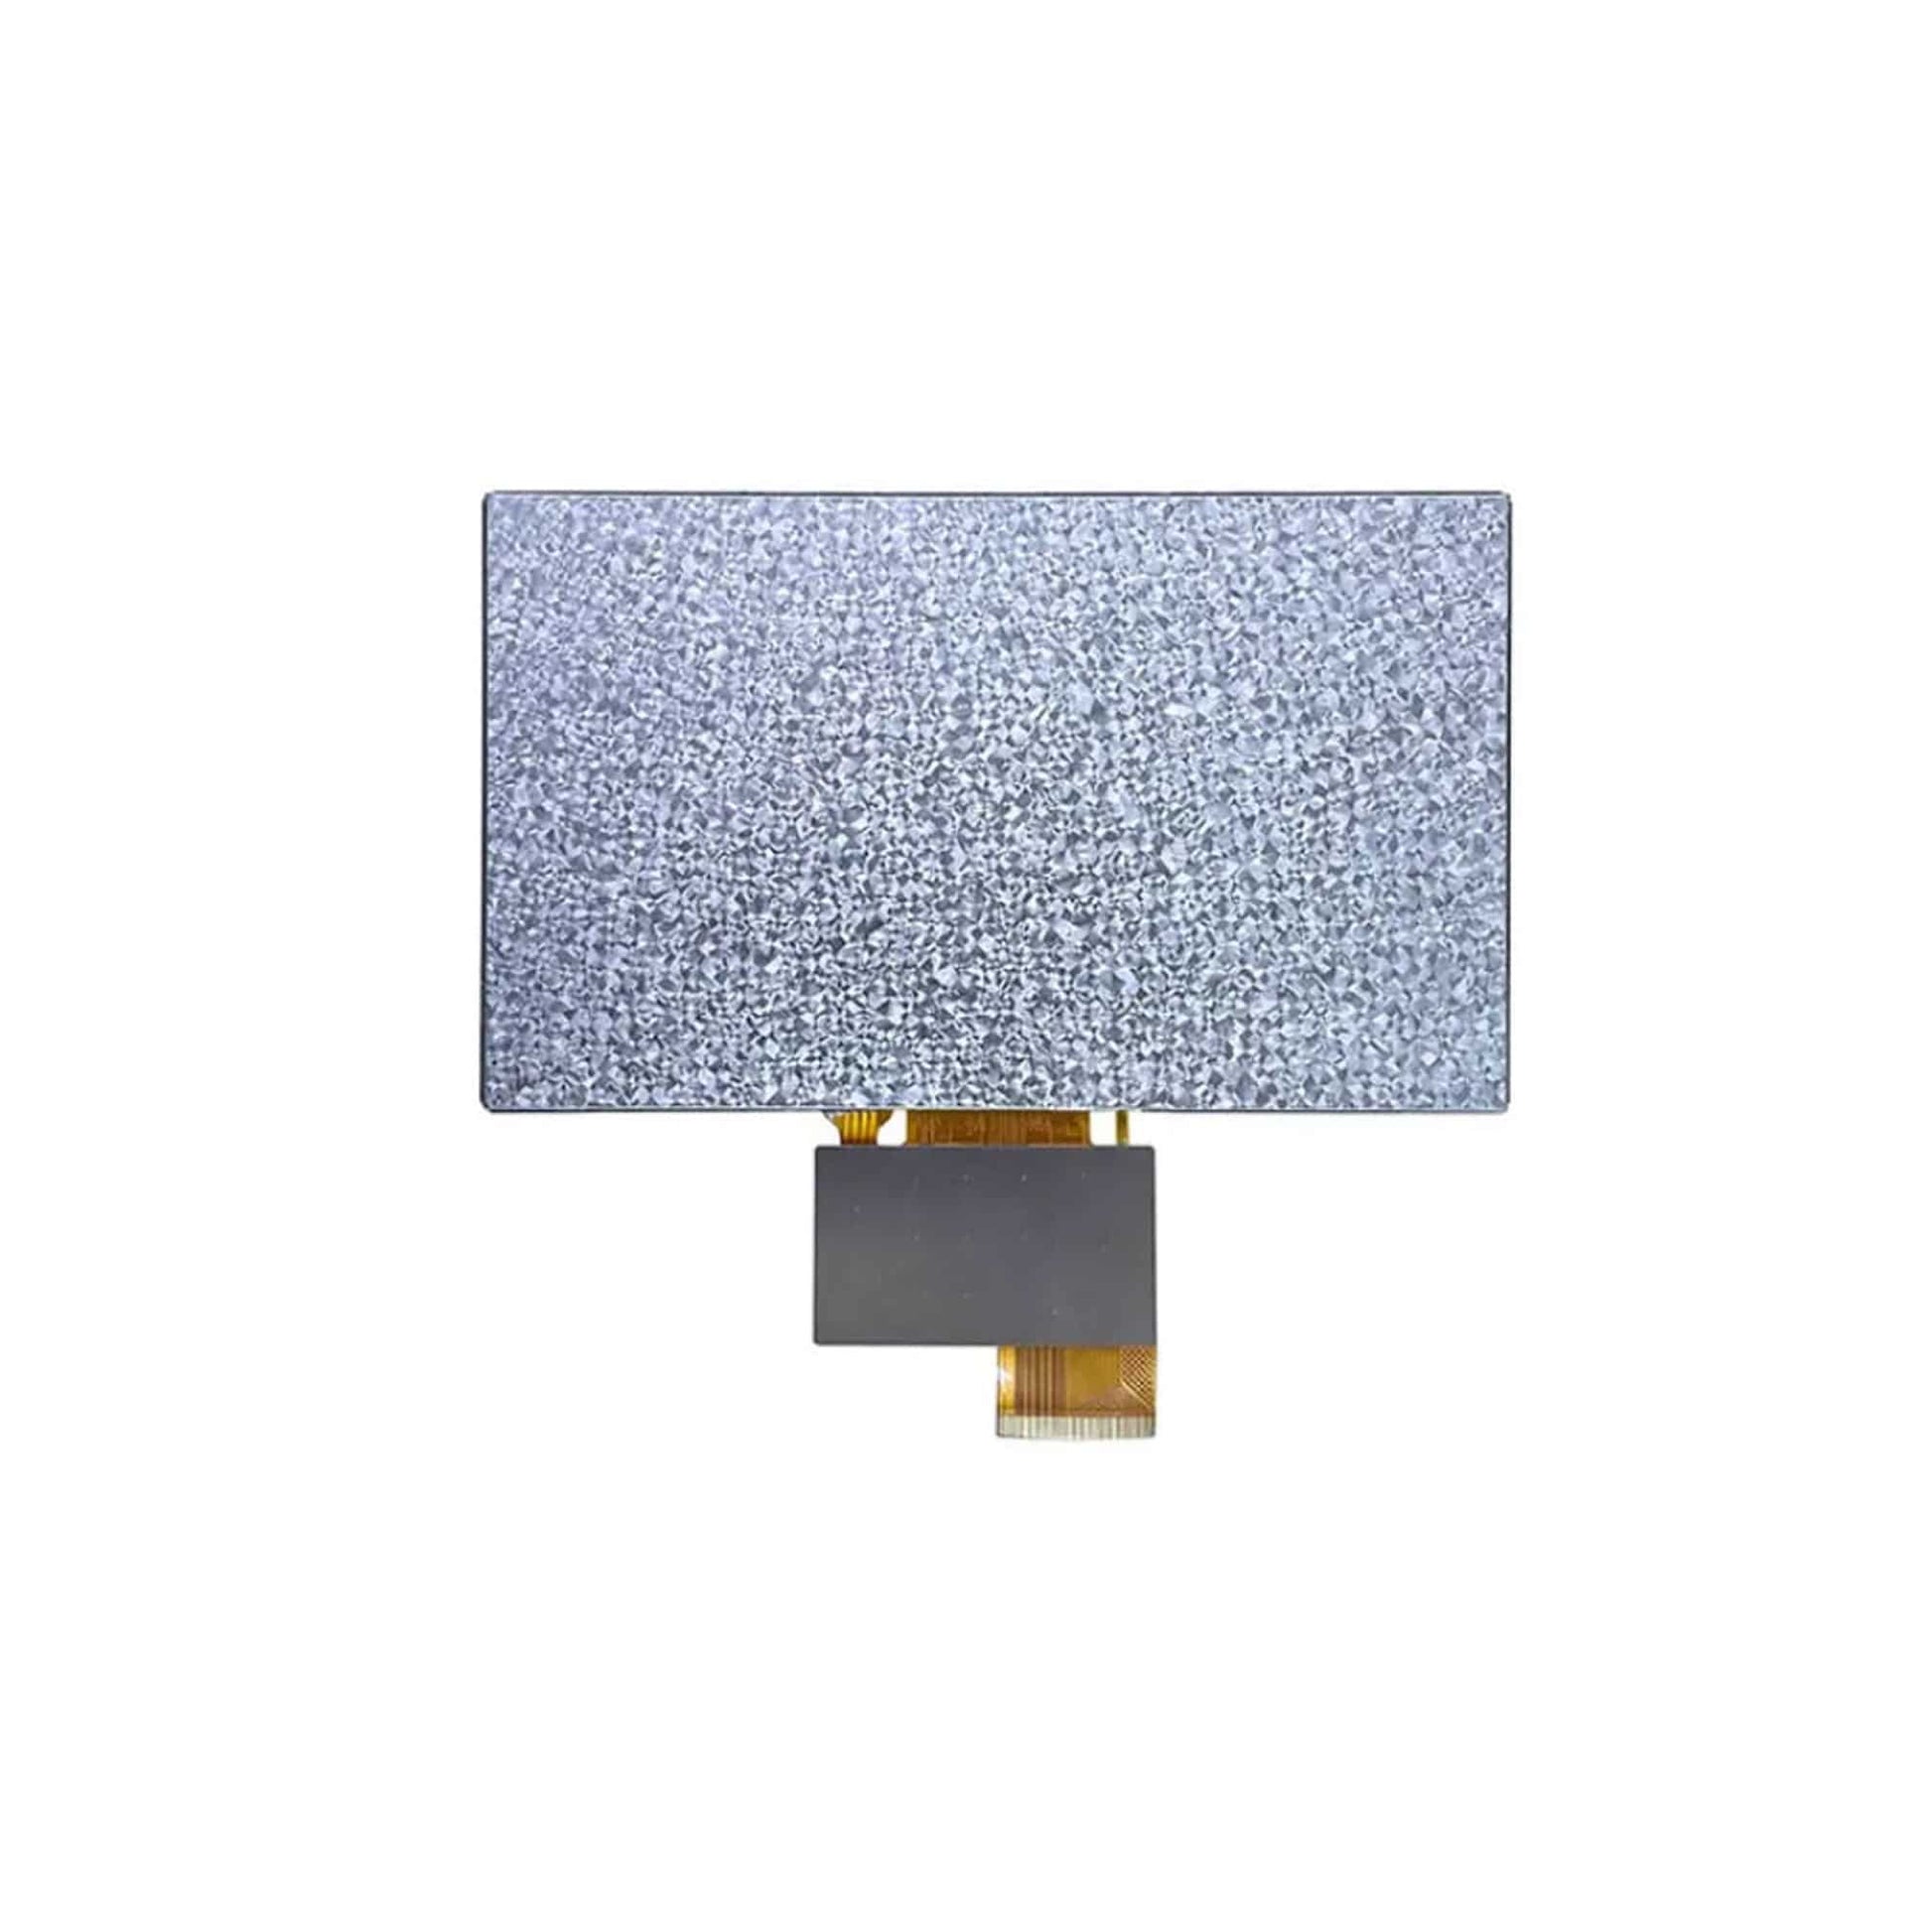 7.0Inch 800x480 COF TTL LCD Display